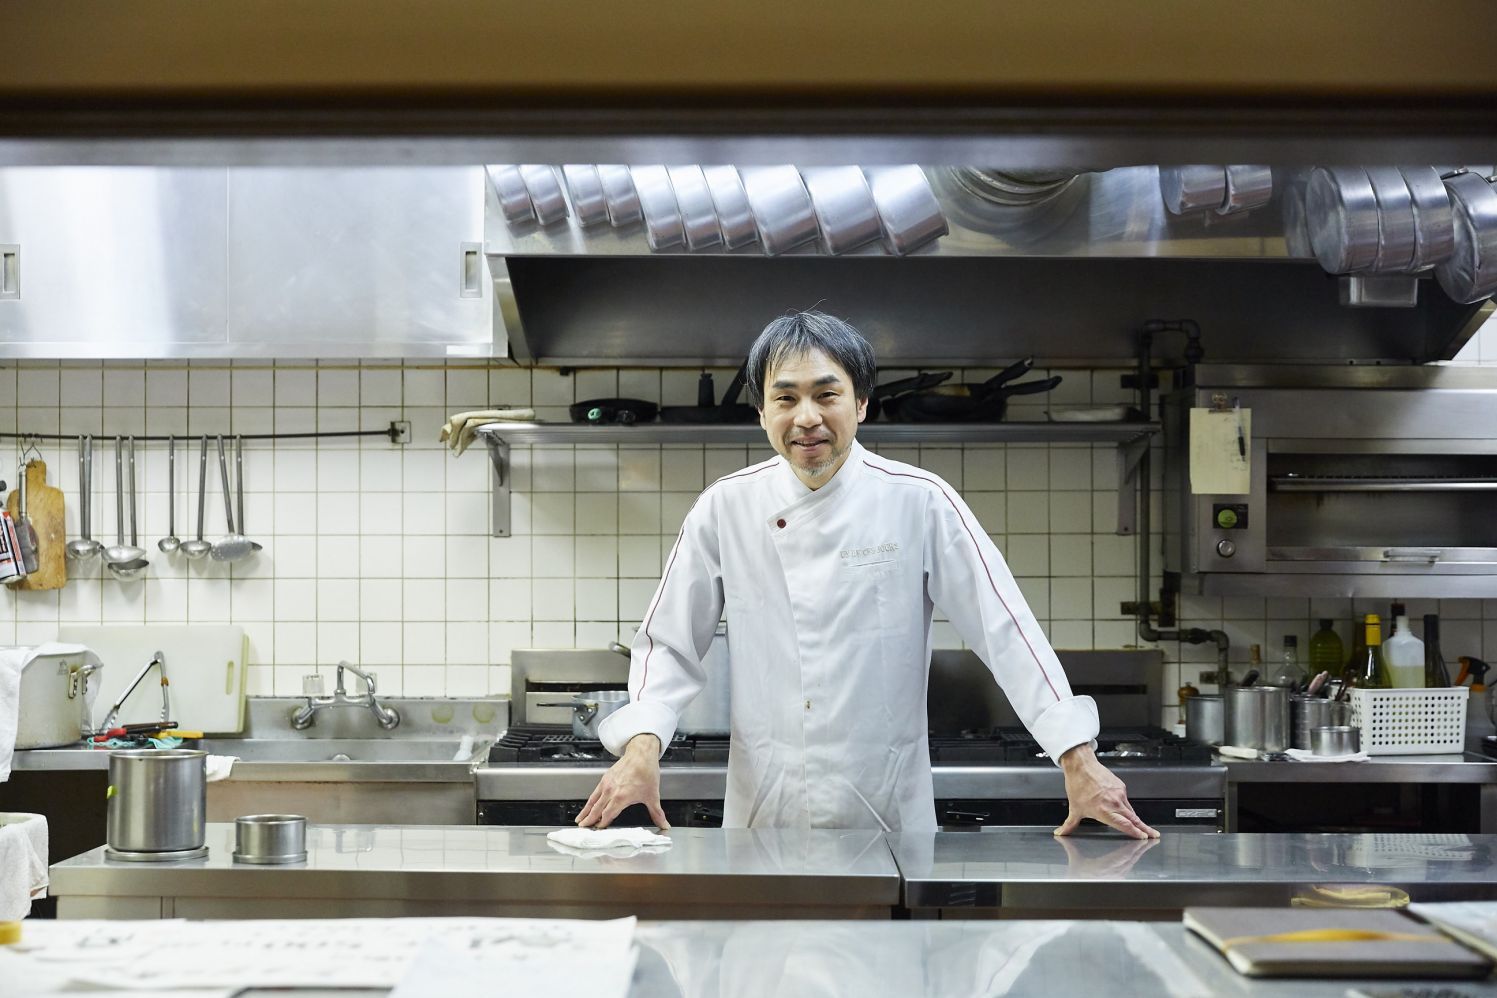 アンドセジュール オーナーシェフ 河井健司さん フランス料理の追究からの温故知新 料理を作るからはじまる100人の仕事 Professions Of Food And プロフェッションズ